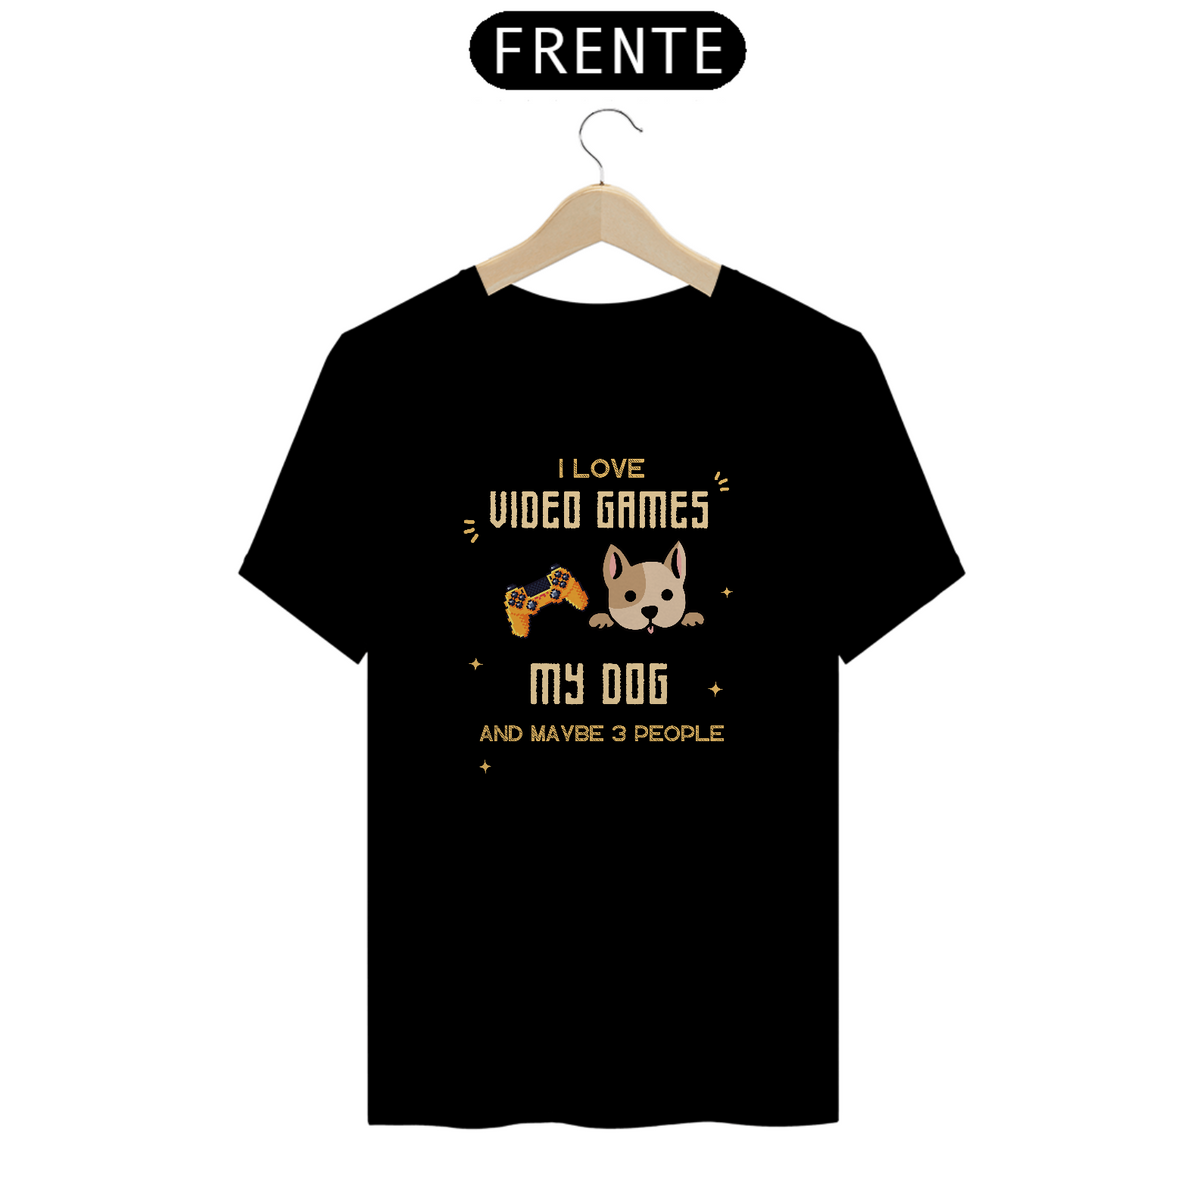 Nome do produto: Camiseta games and dog